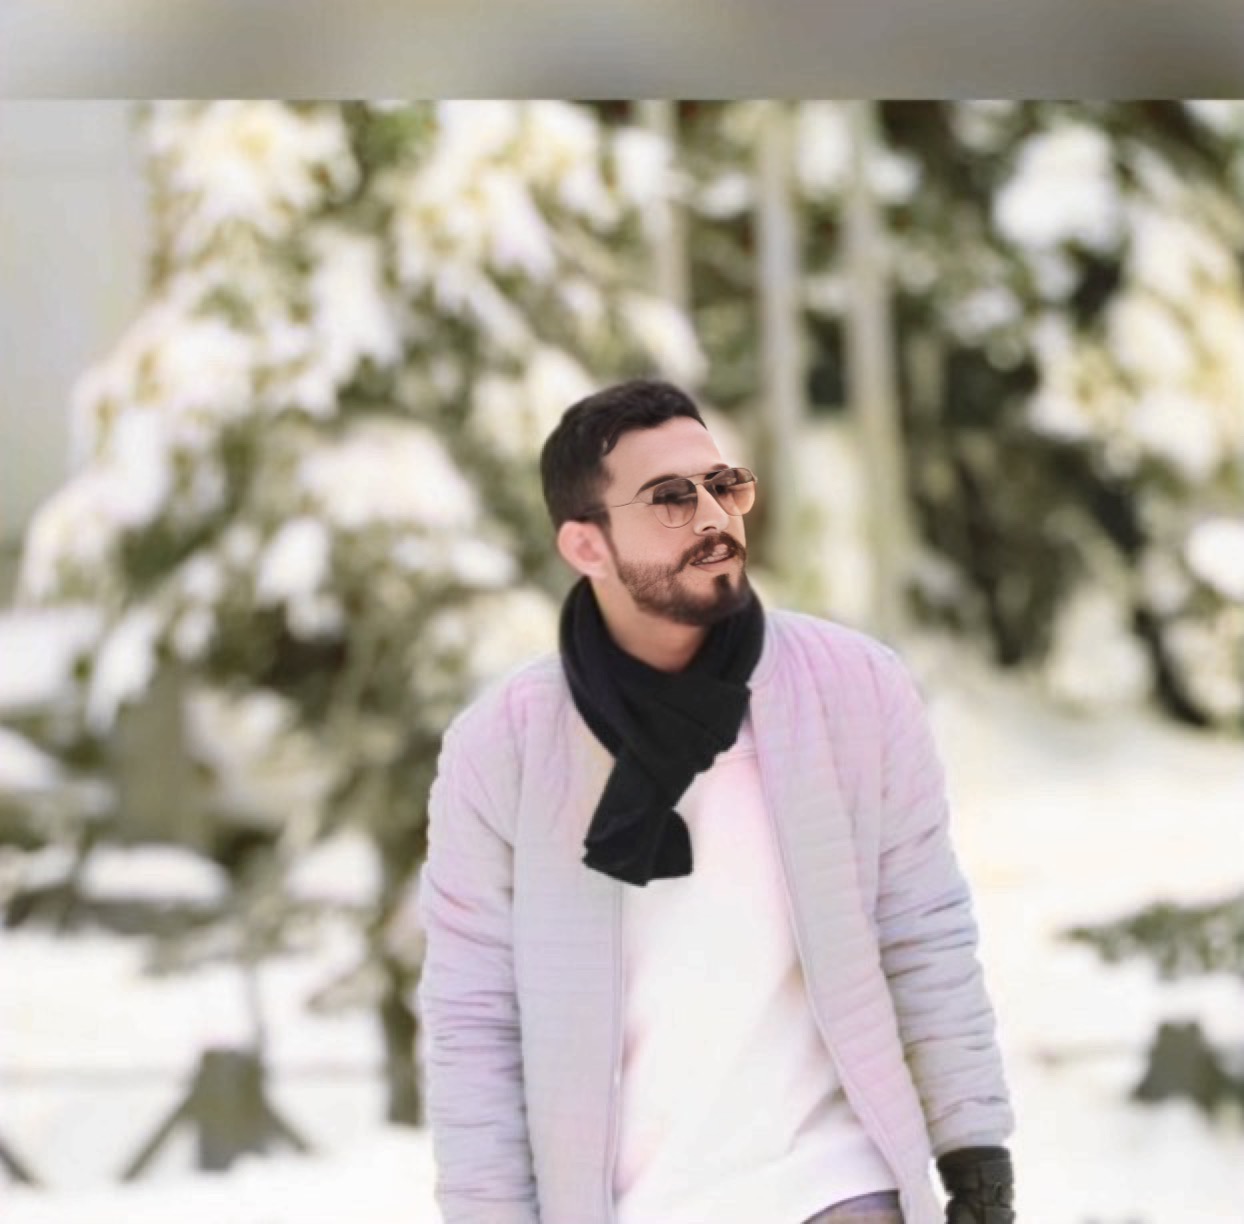 تم تصوير الصوره في تركيا في فصل الشتاء عام 2018 